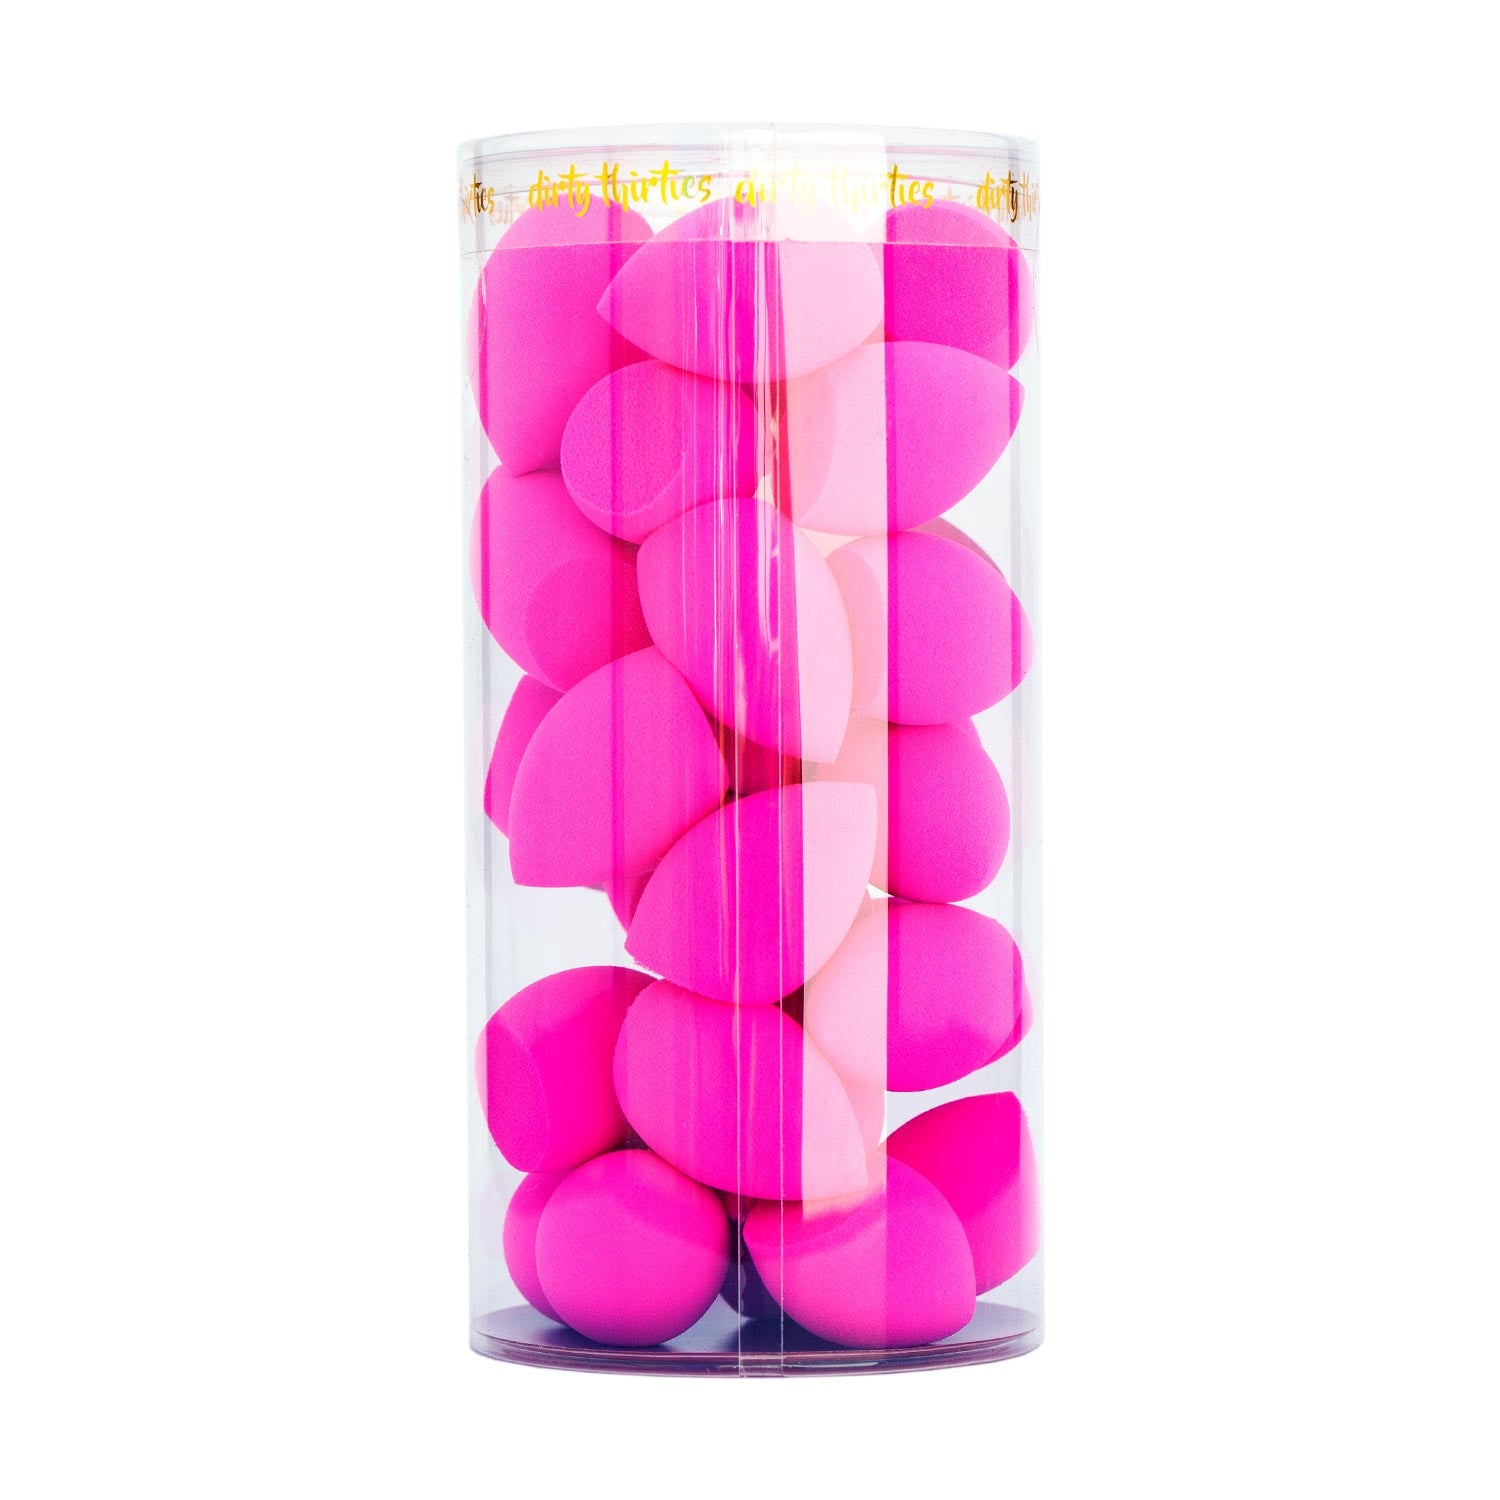 30 MINI Beauty Sponges - Hot Pink